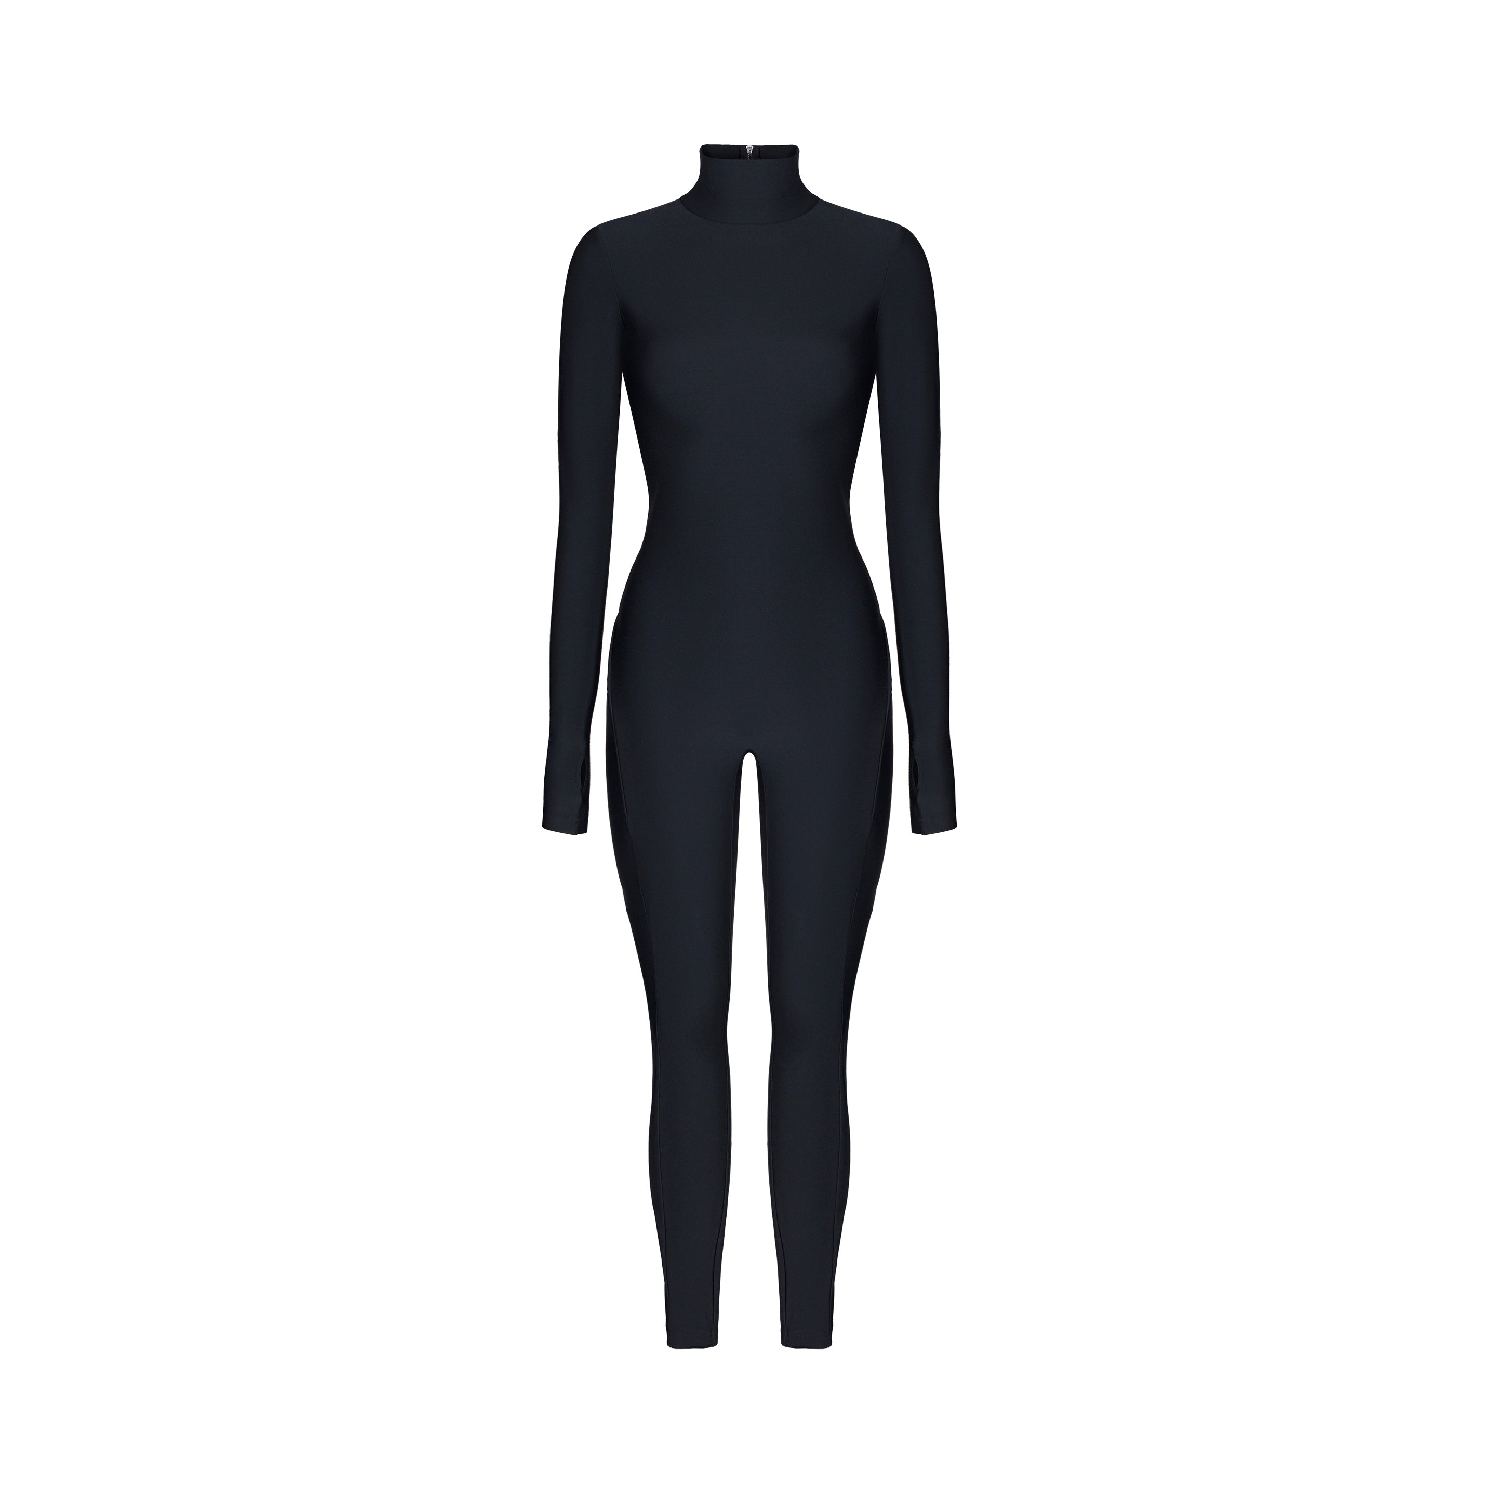 Monosuit Women's Jumpsuit Open Back- Cosmic Chic Black